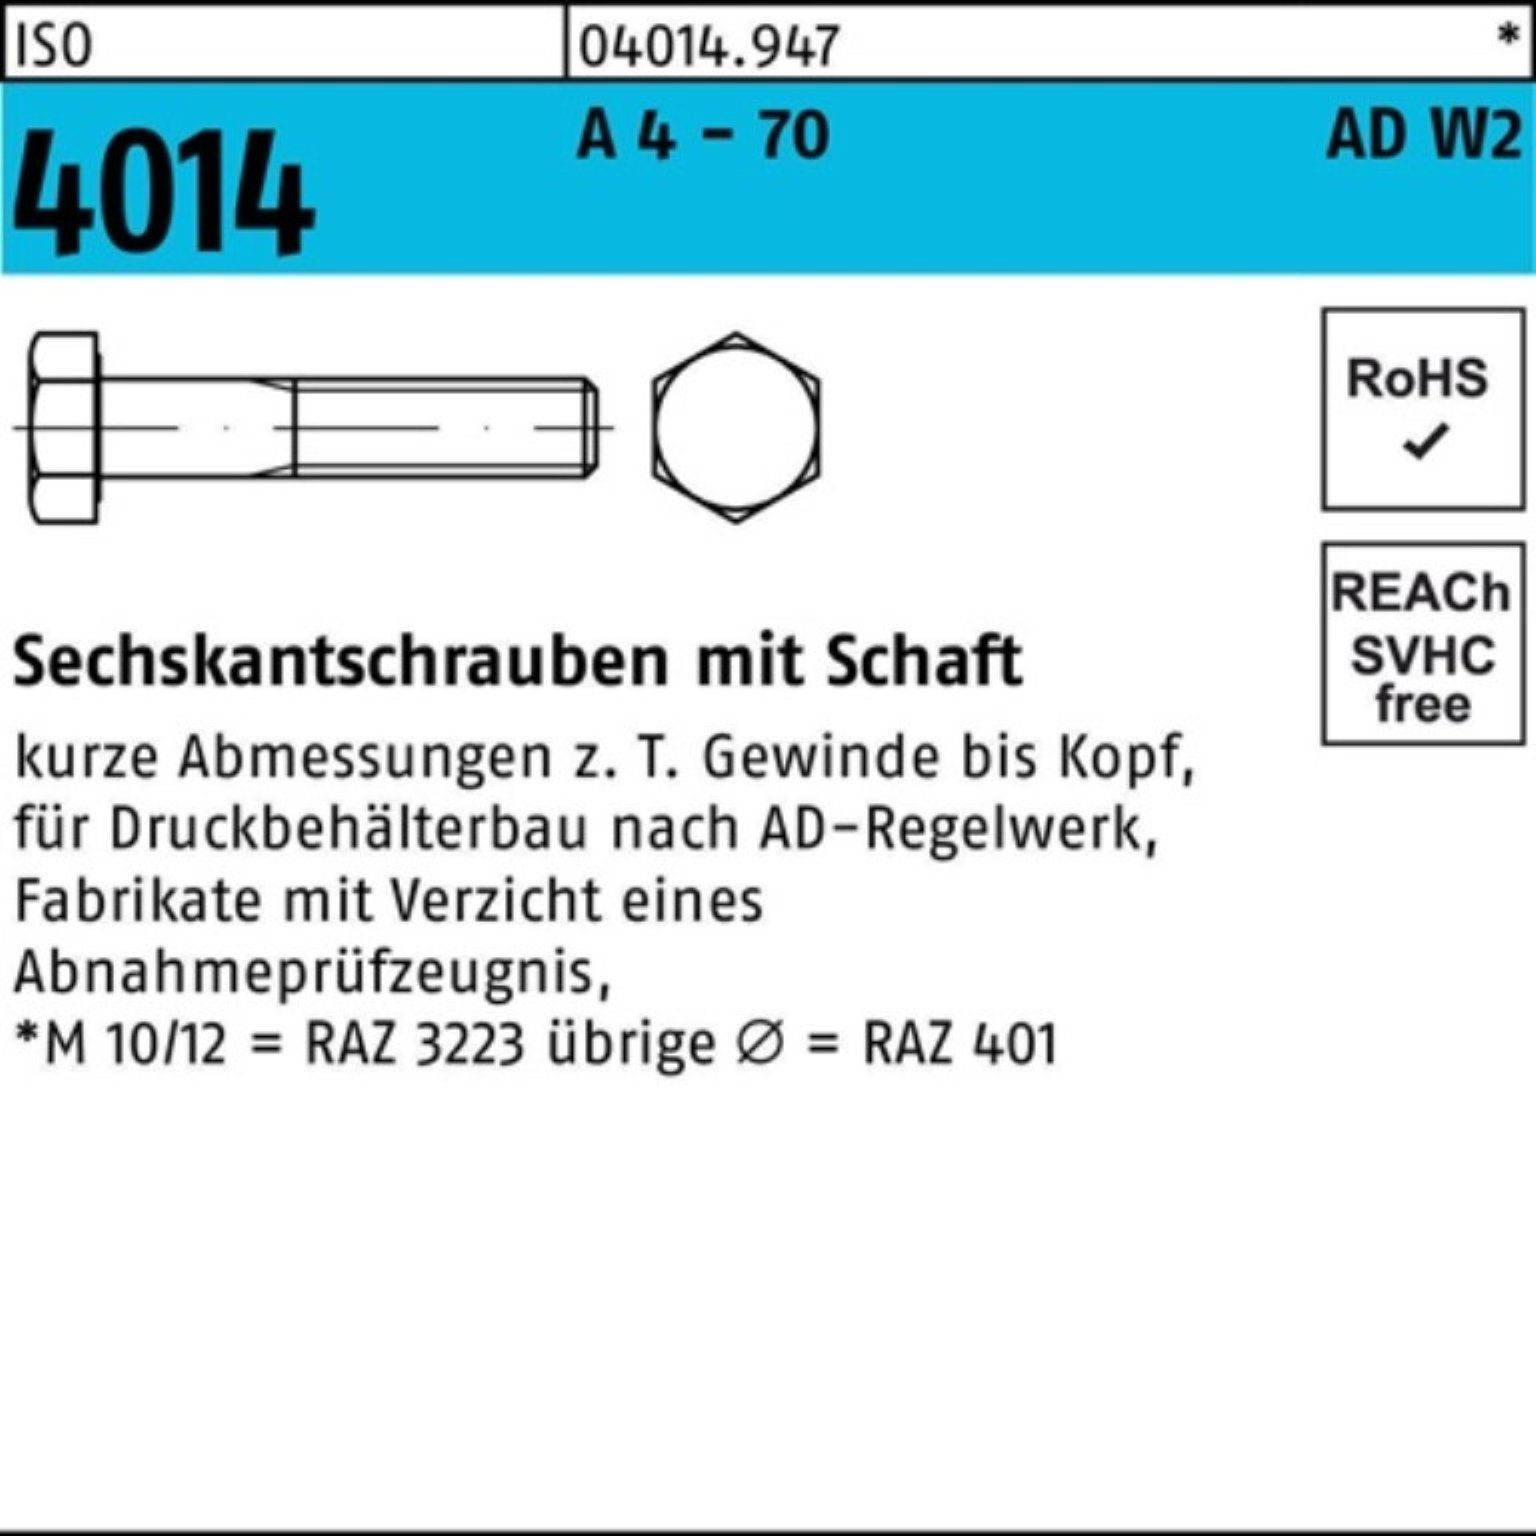 Bufab Sechskantschraube 100er Pack Sechskantschraube ISO 4014 Schaft M10x 100 A 4 - 70 AD-W2 5